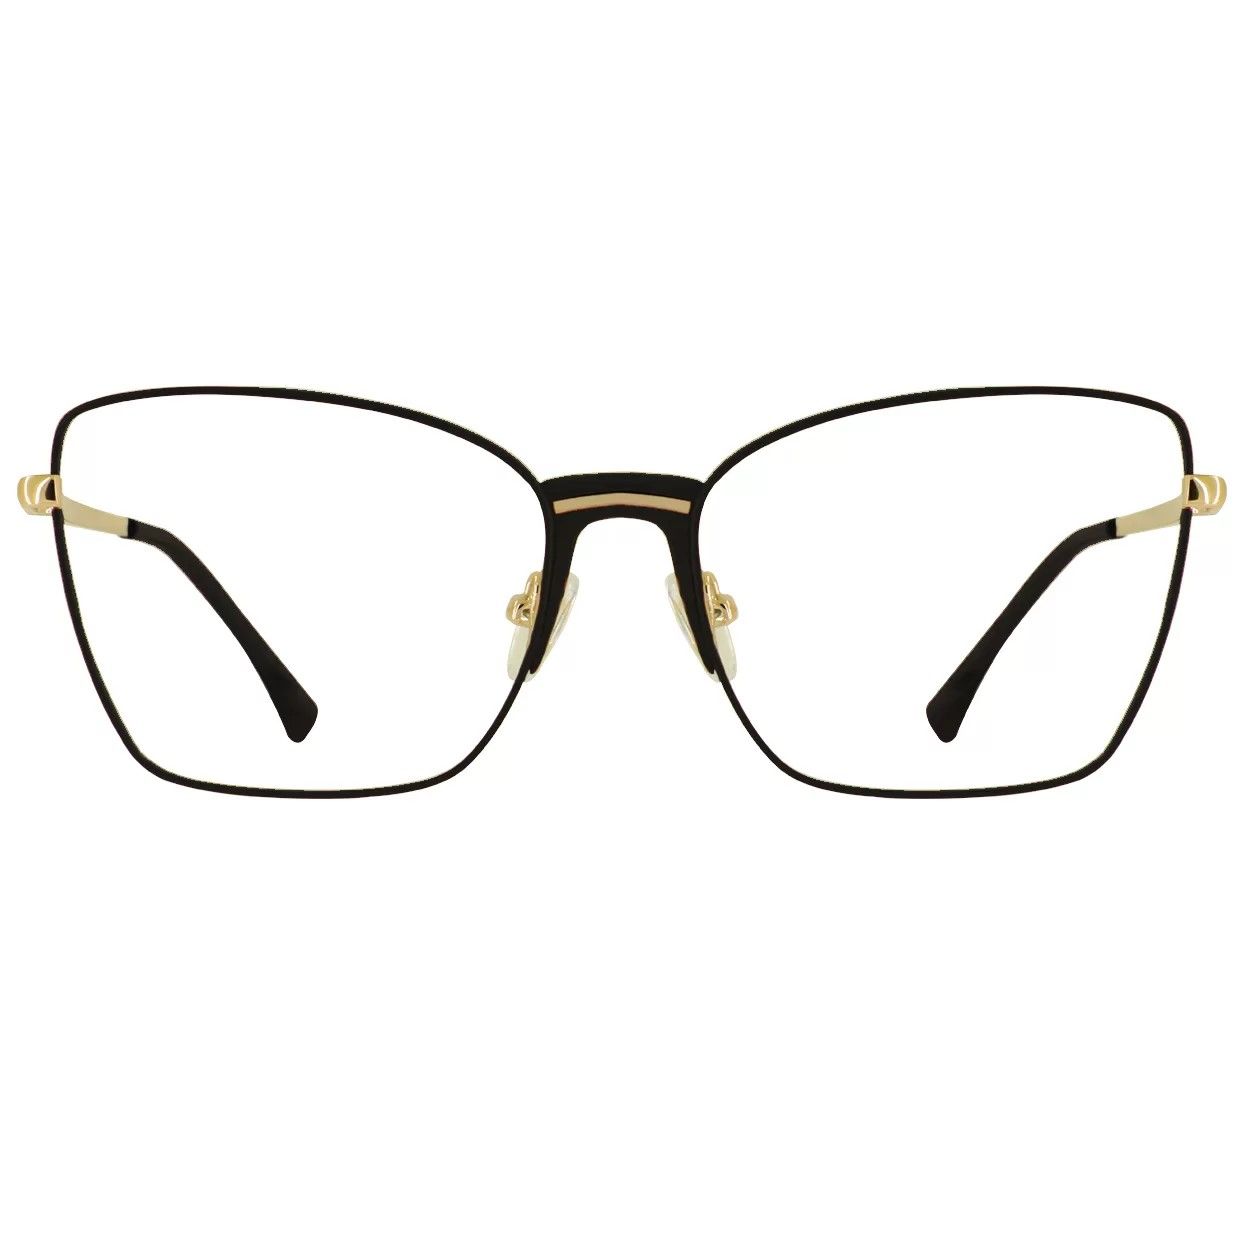 فریم عینک طبی گودلوک مدل 95393 -  - 1